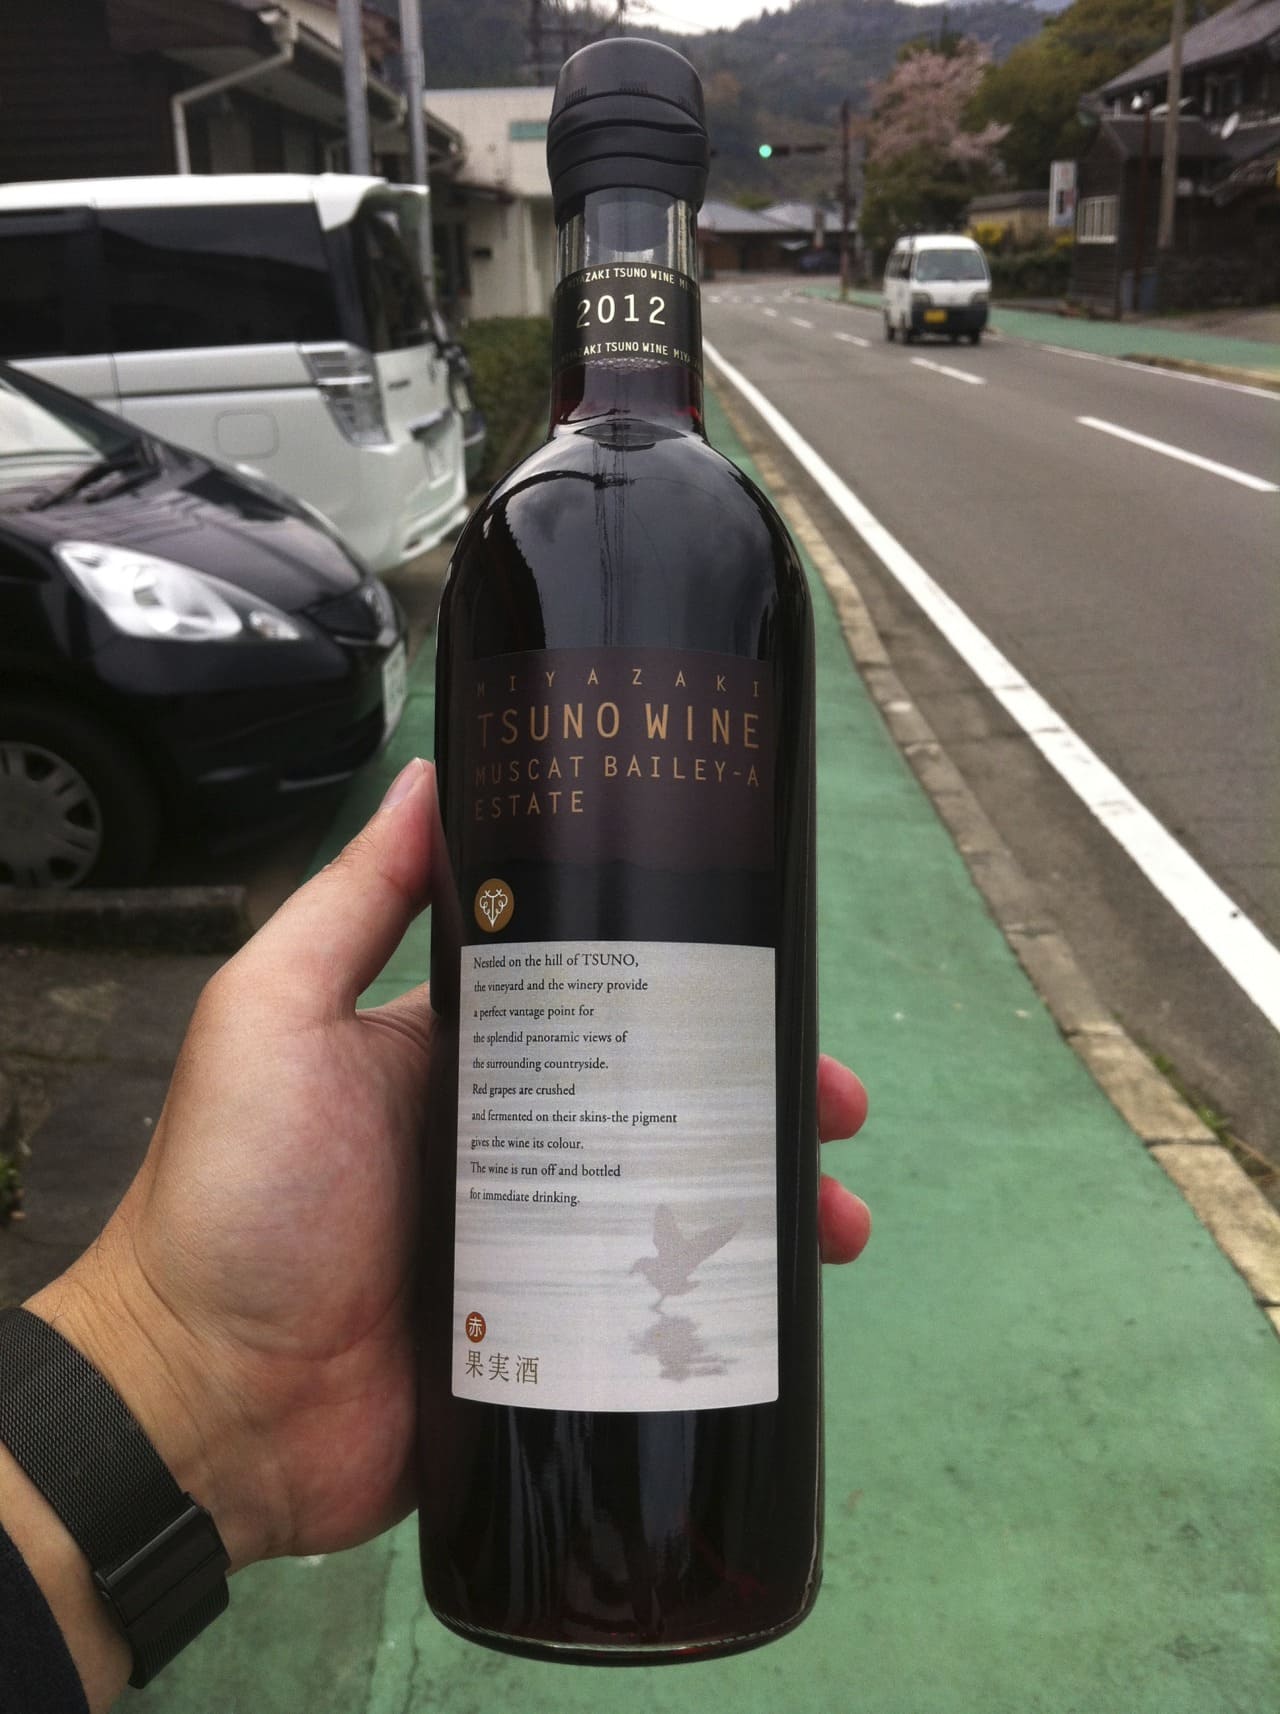 Tsuno Wine Muscat Bailey A Estate